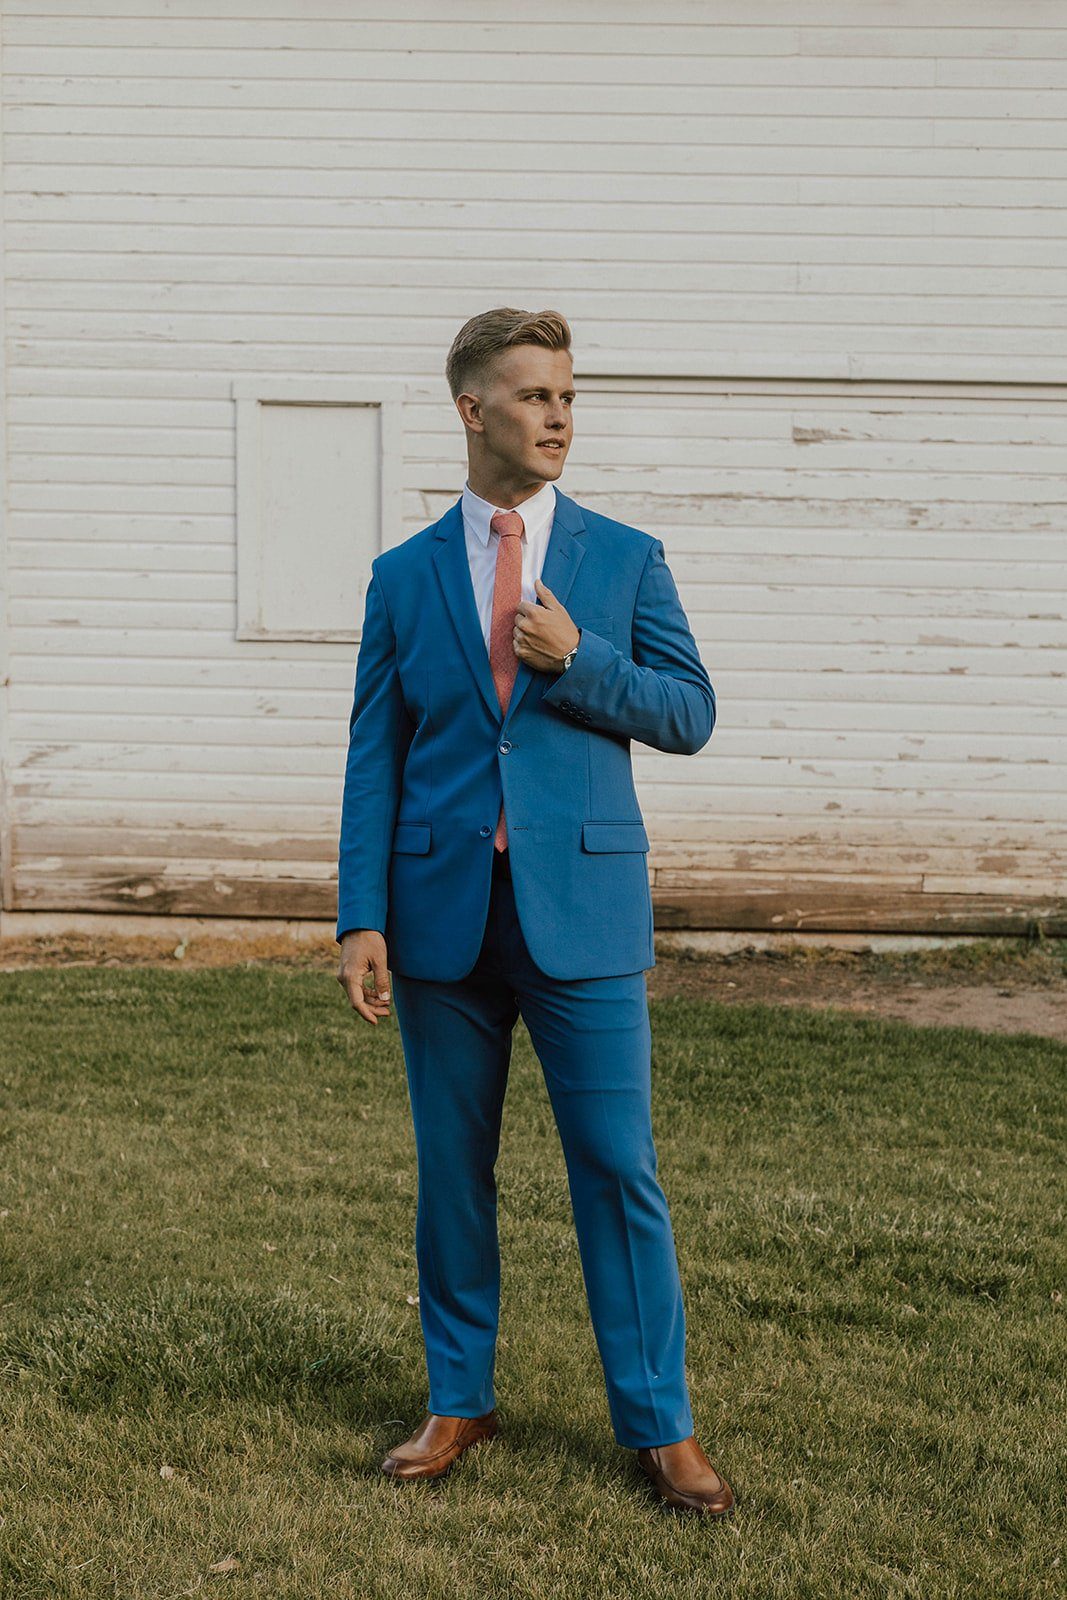 Washable Flex Suit - Washable 2-Pant Flex Suit Blue